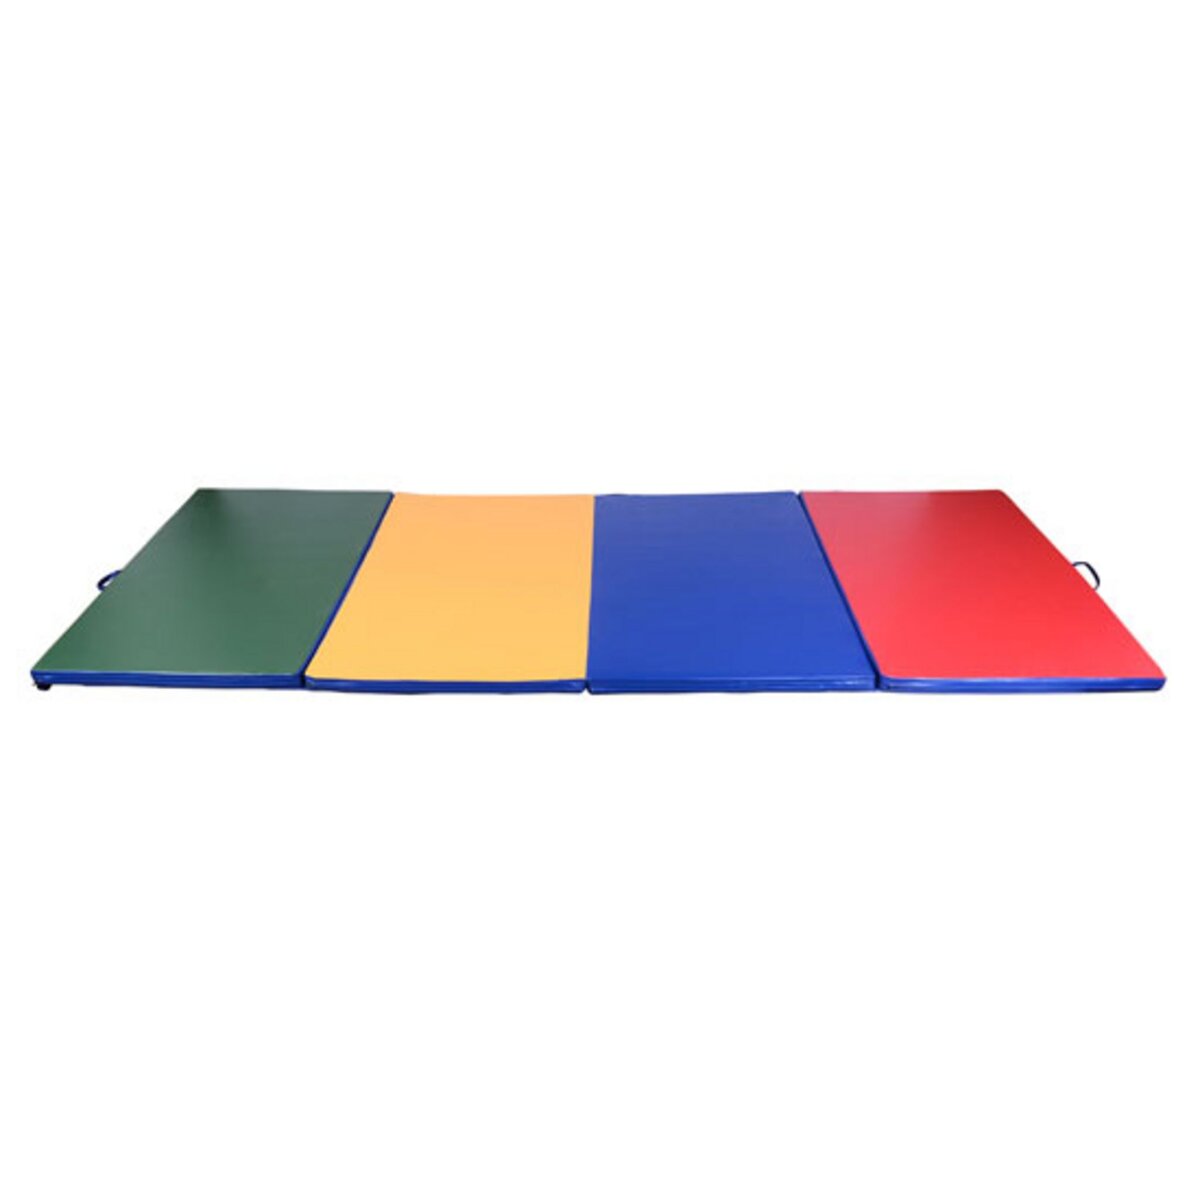 HOMCOM Tapis de sol gymnastique Fitness pliable portable rembourrage mousse  5 cm grand confort revêtement synthétique dim. 2,93L m x 1,15l m violet pas  cher 